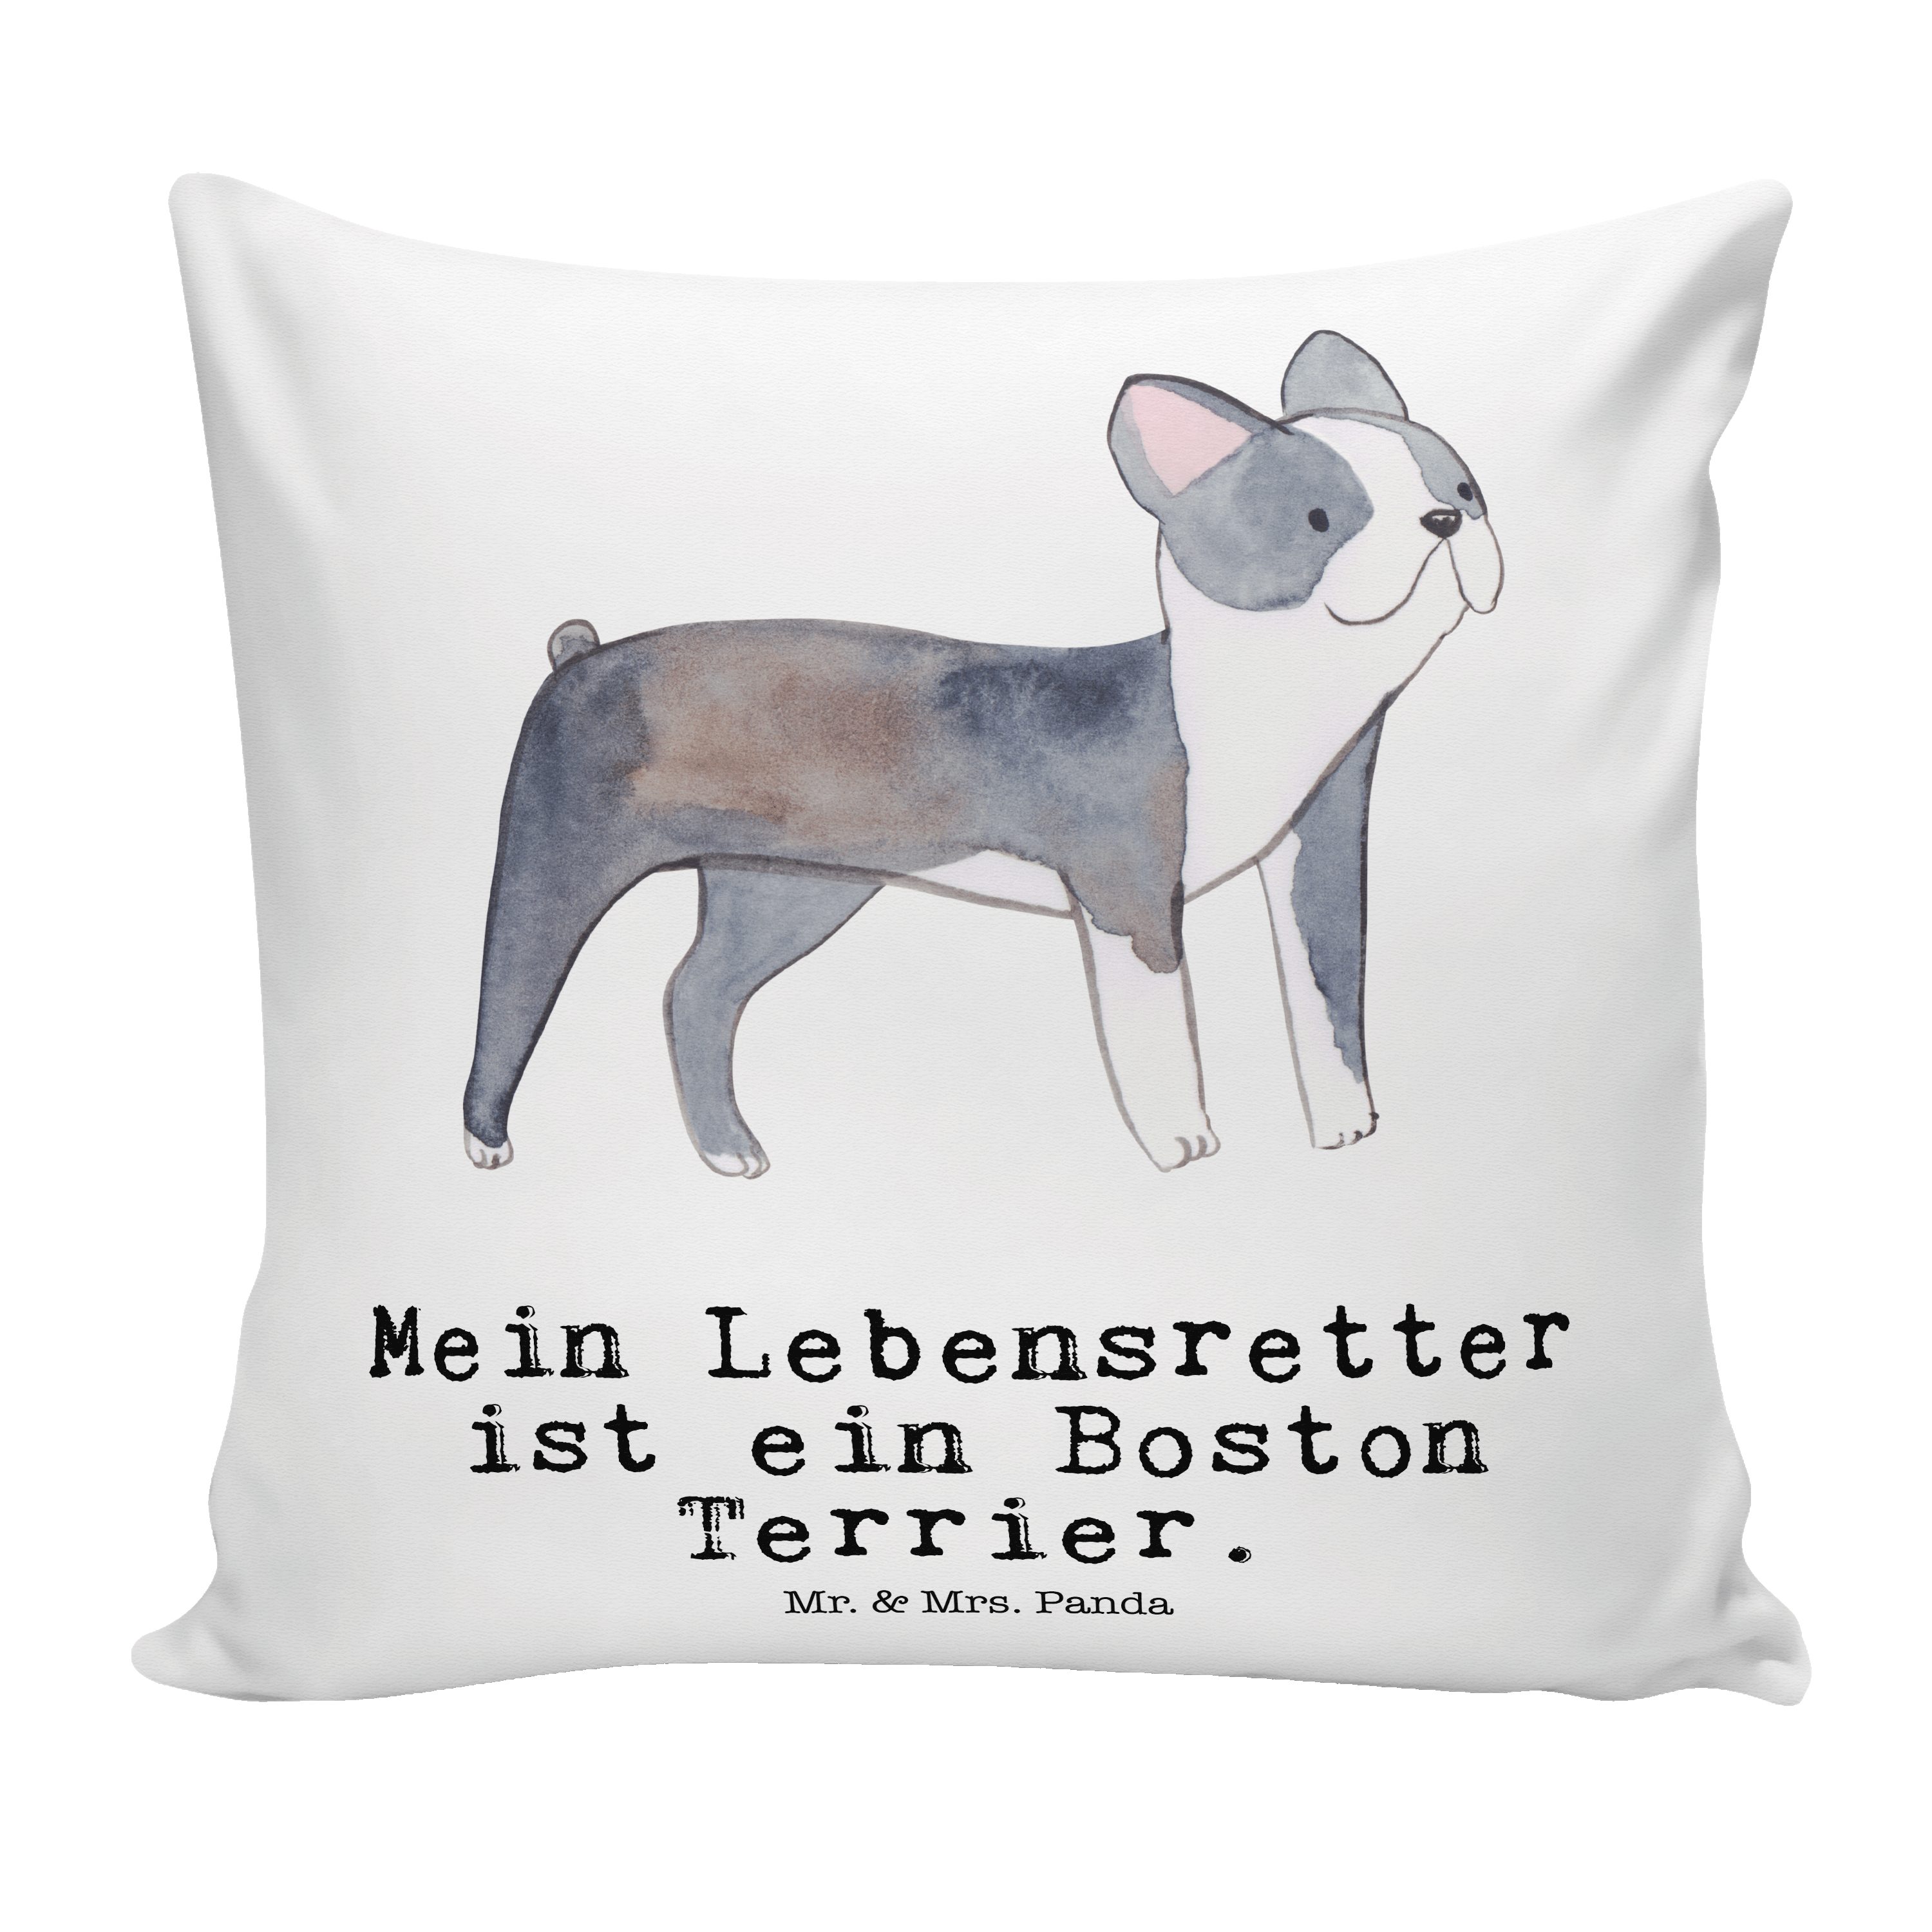 Mr. & Mrs. Panda Dekokissen Boston Terrier Lebensretter - Weiß - Geschenk, Motivkissen, Hunderass